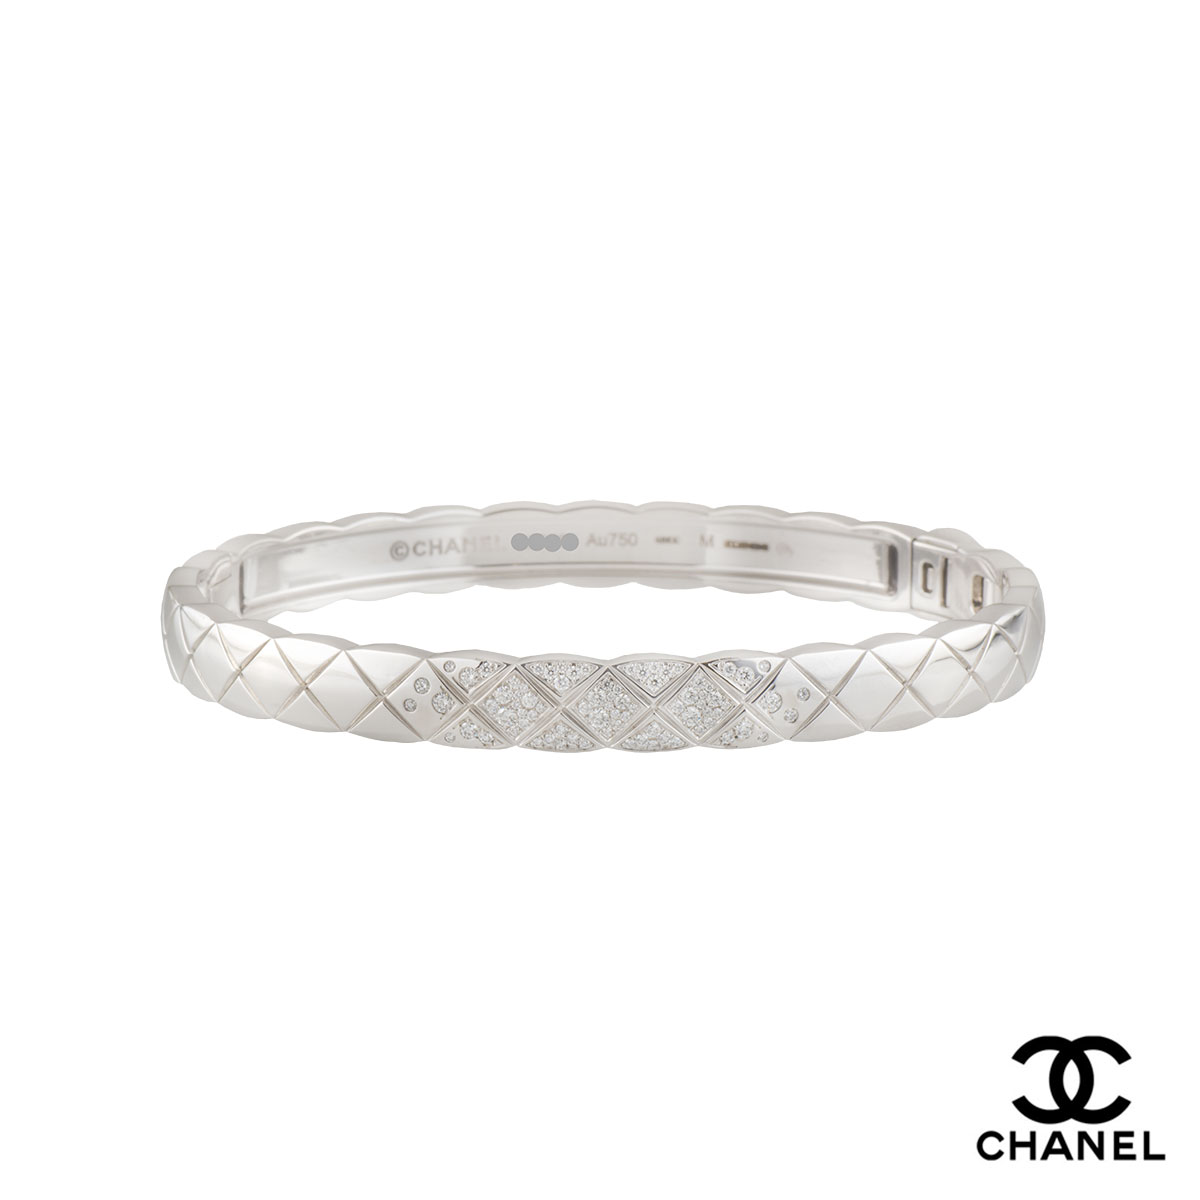 Chanel White Gold Diamond Comete Bracelet 090ct DFVVS1  Rich Diamonds